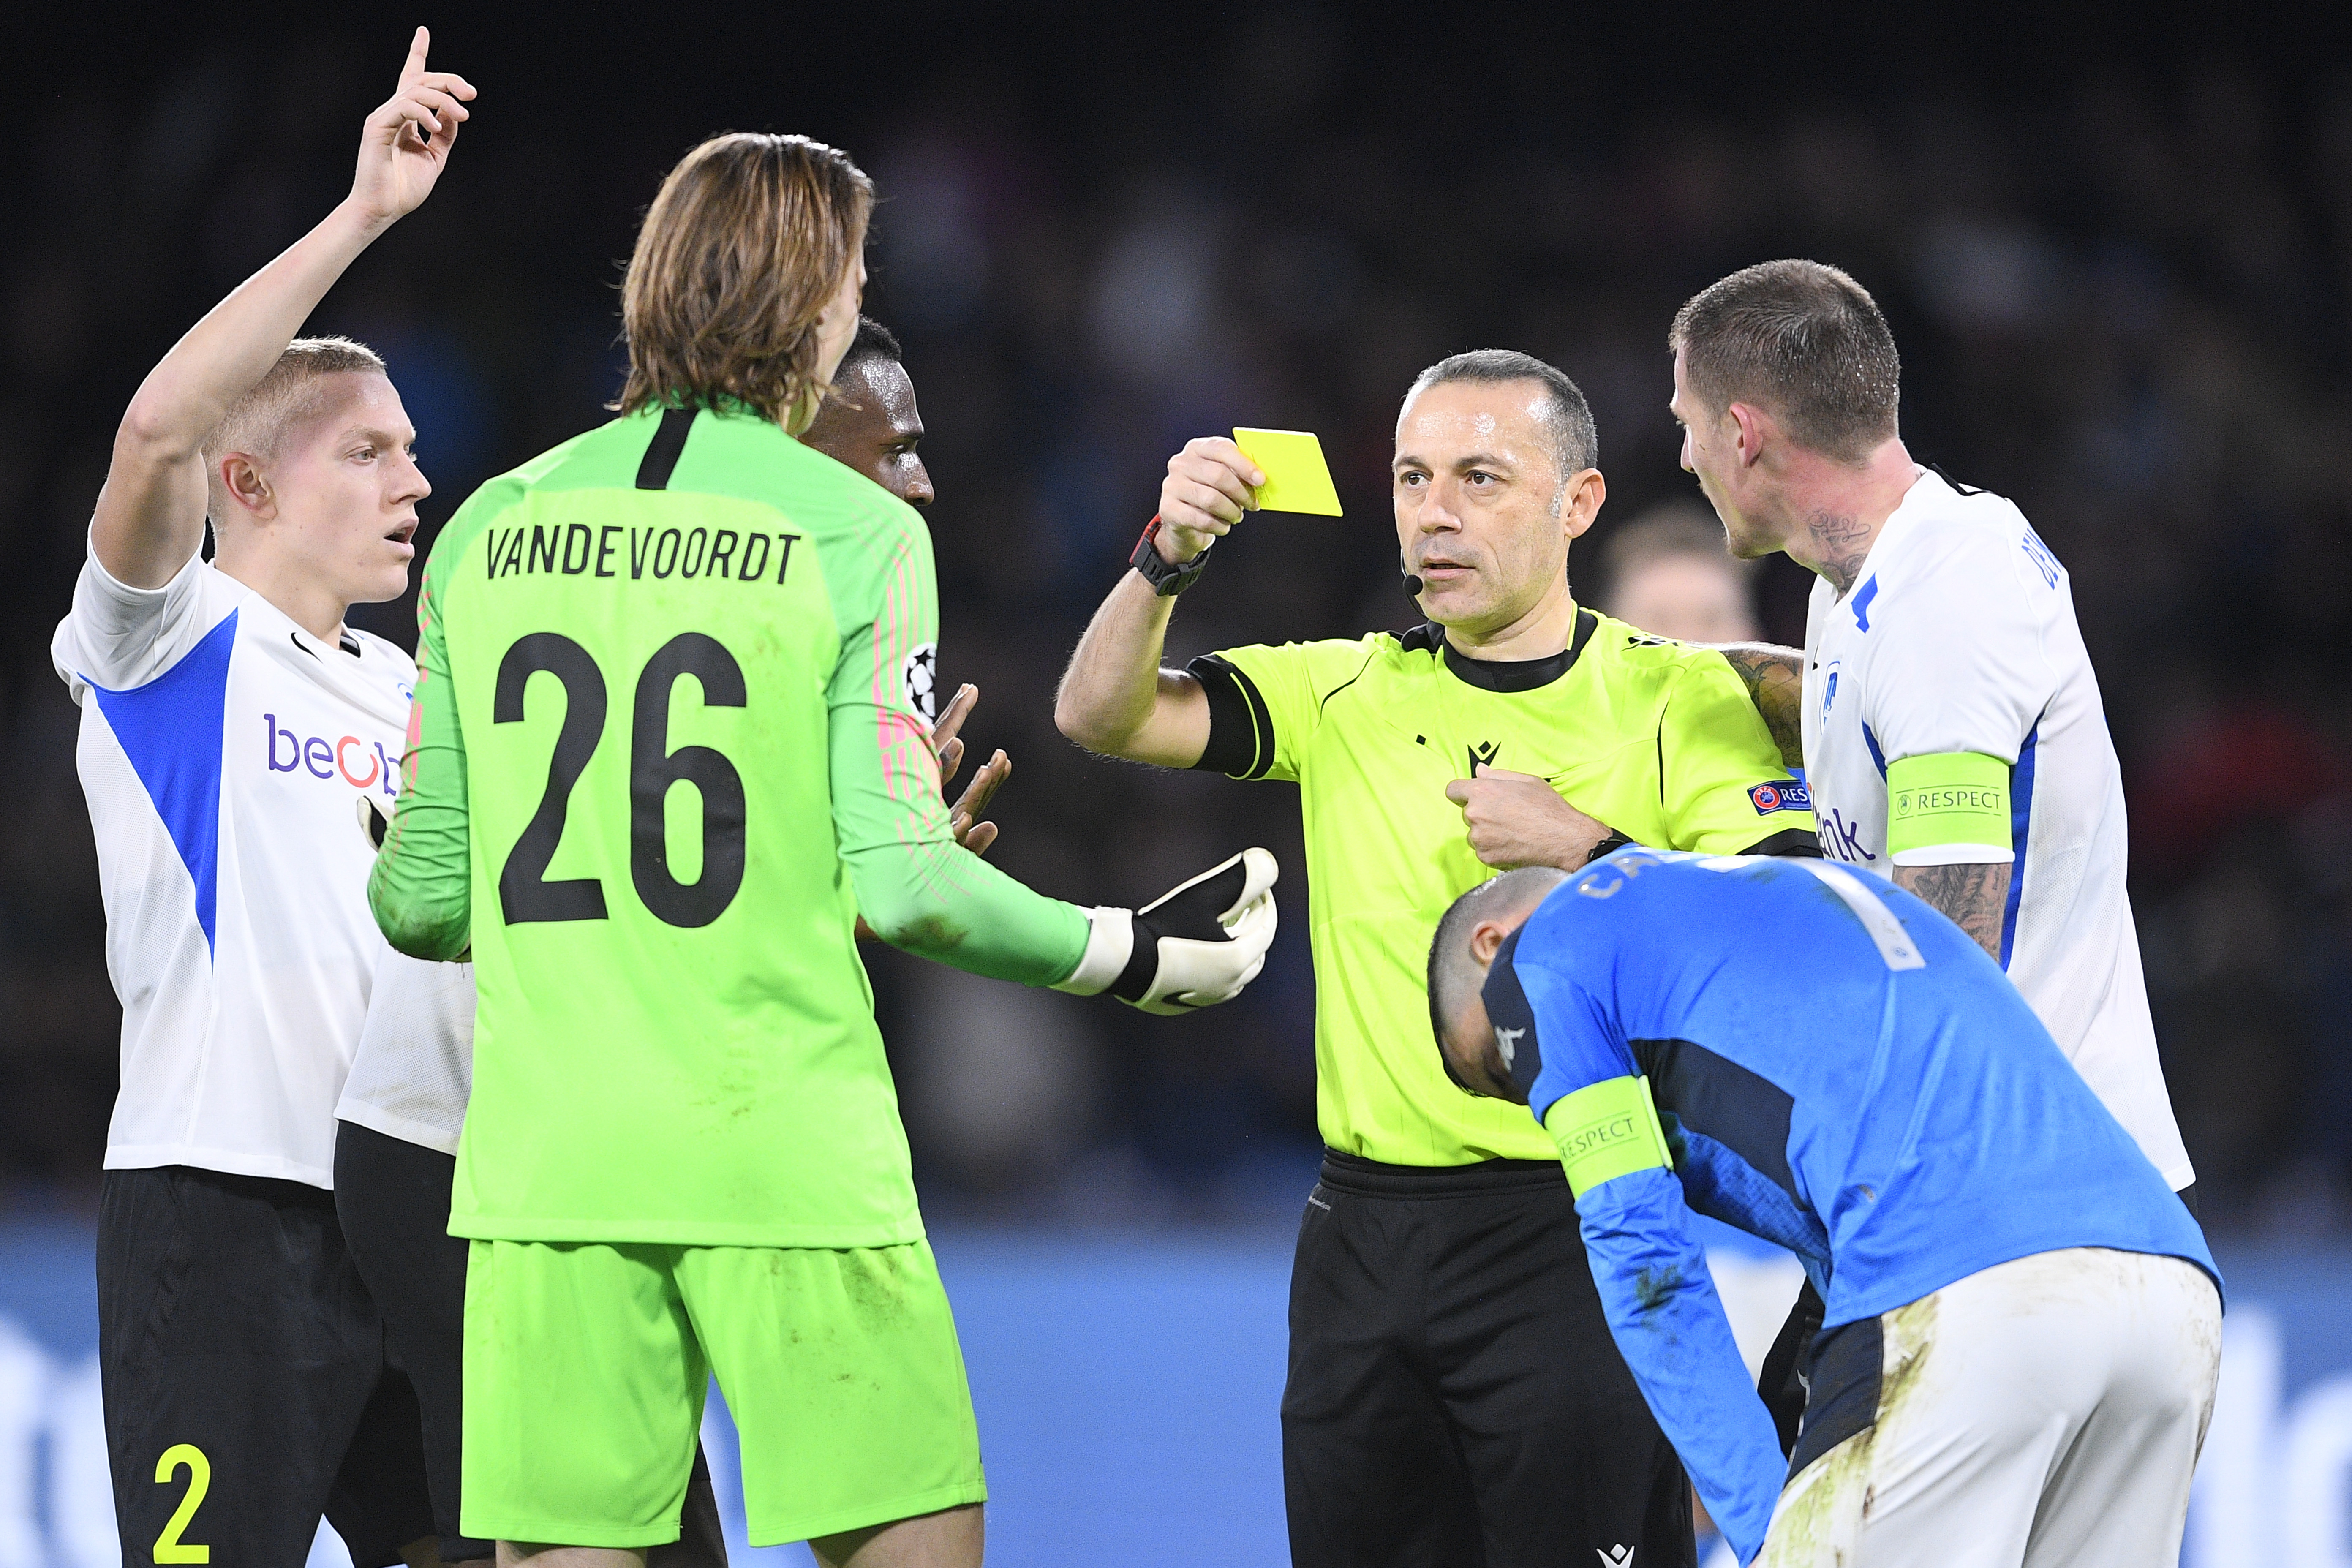 Maarten Vandevoordt receives a yellow card after conceding a penalty.